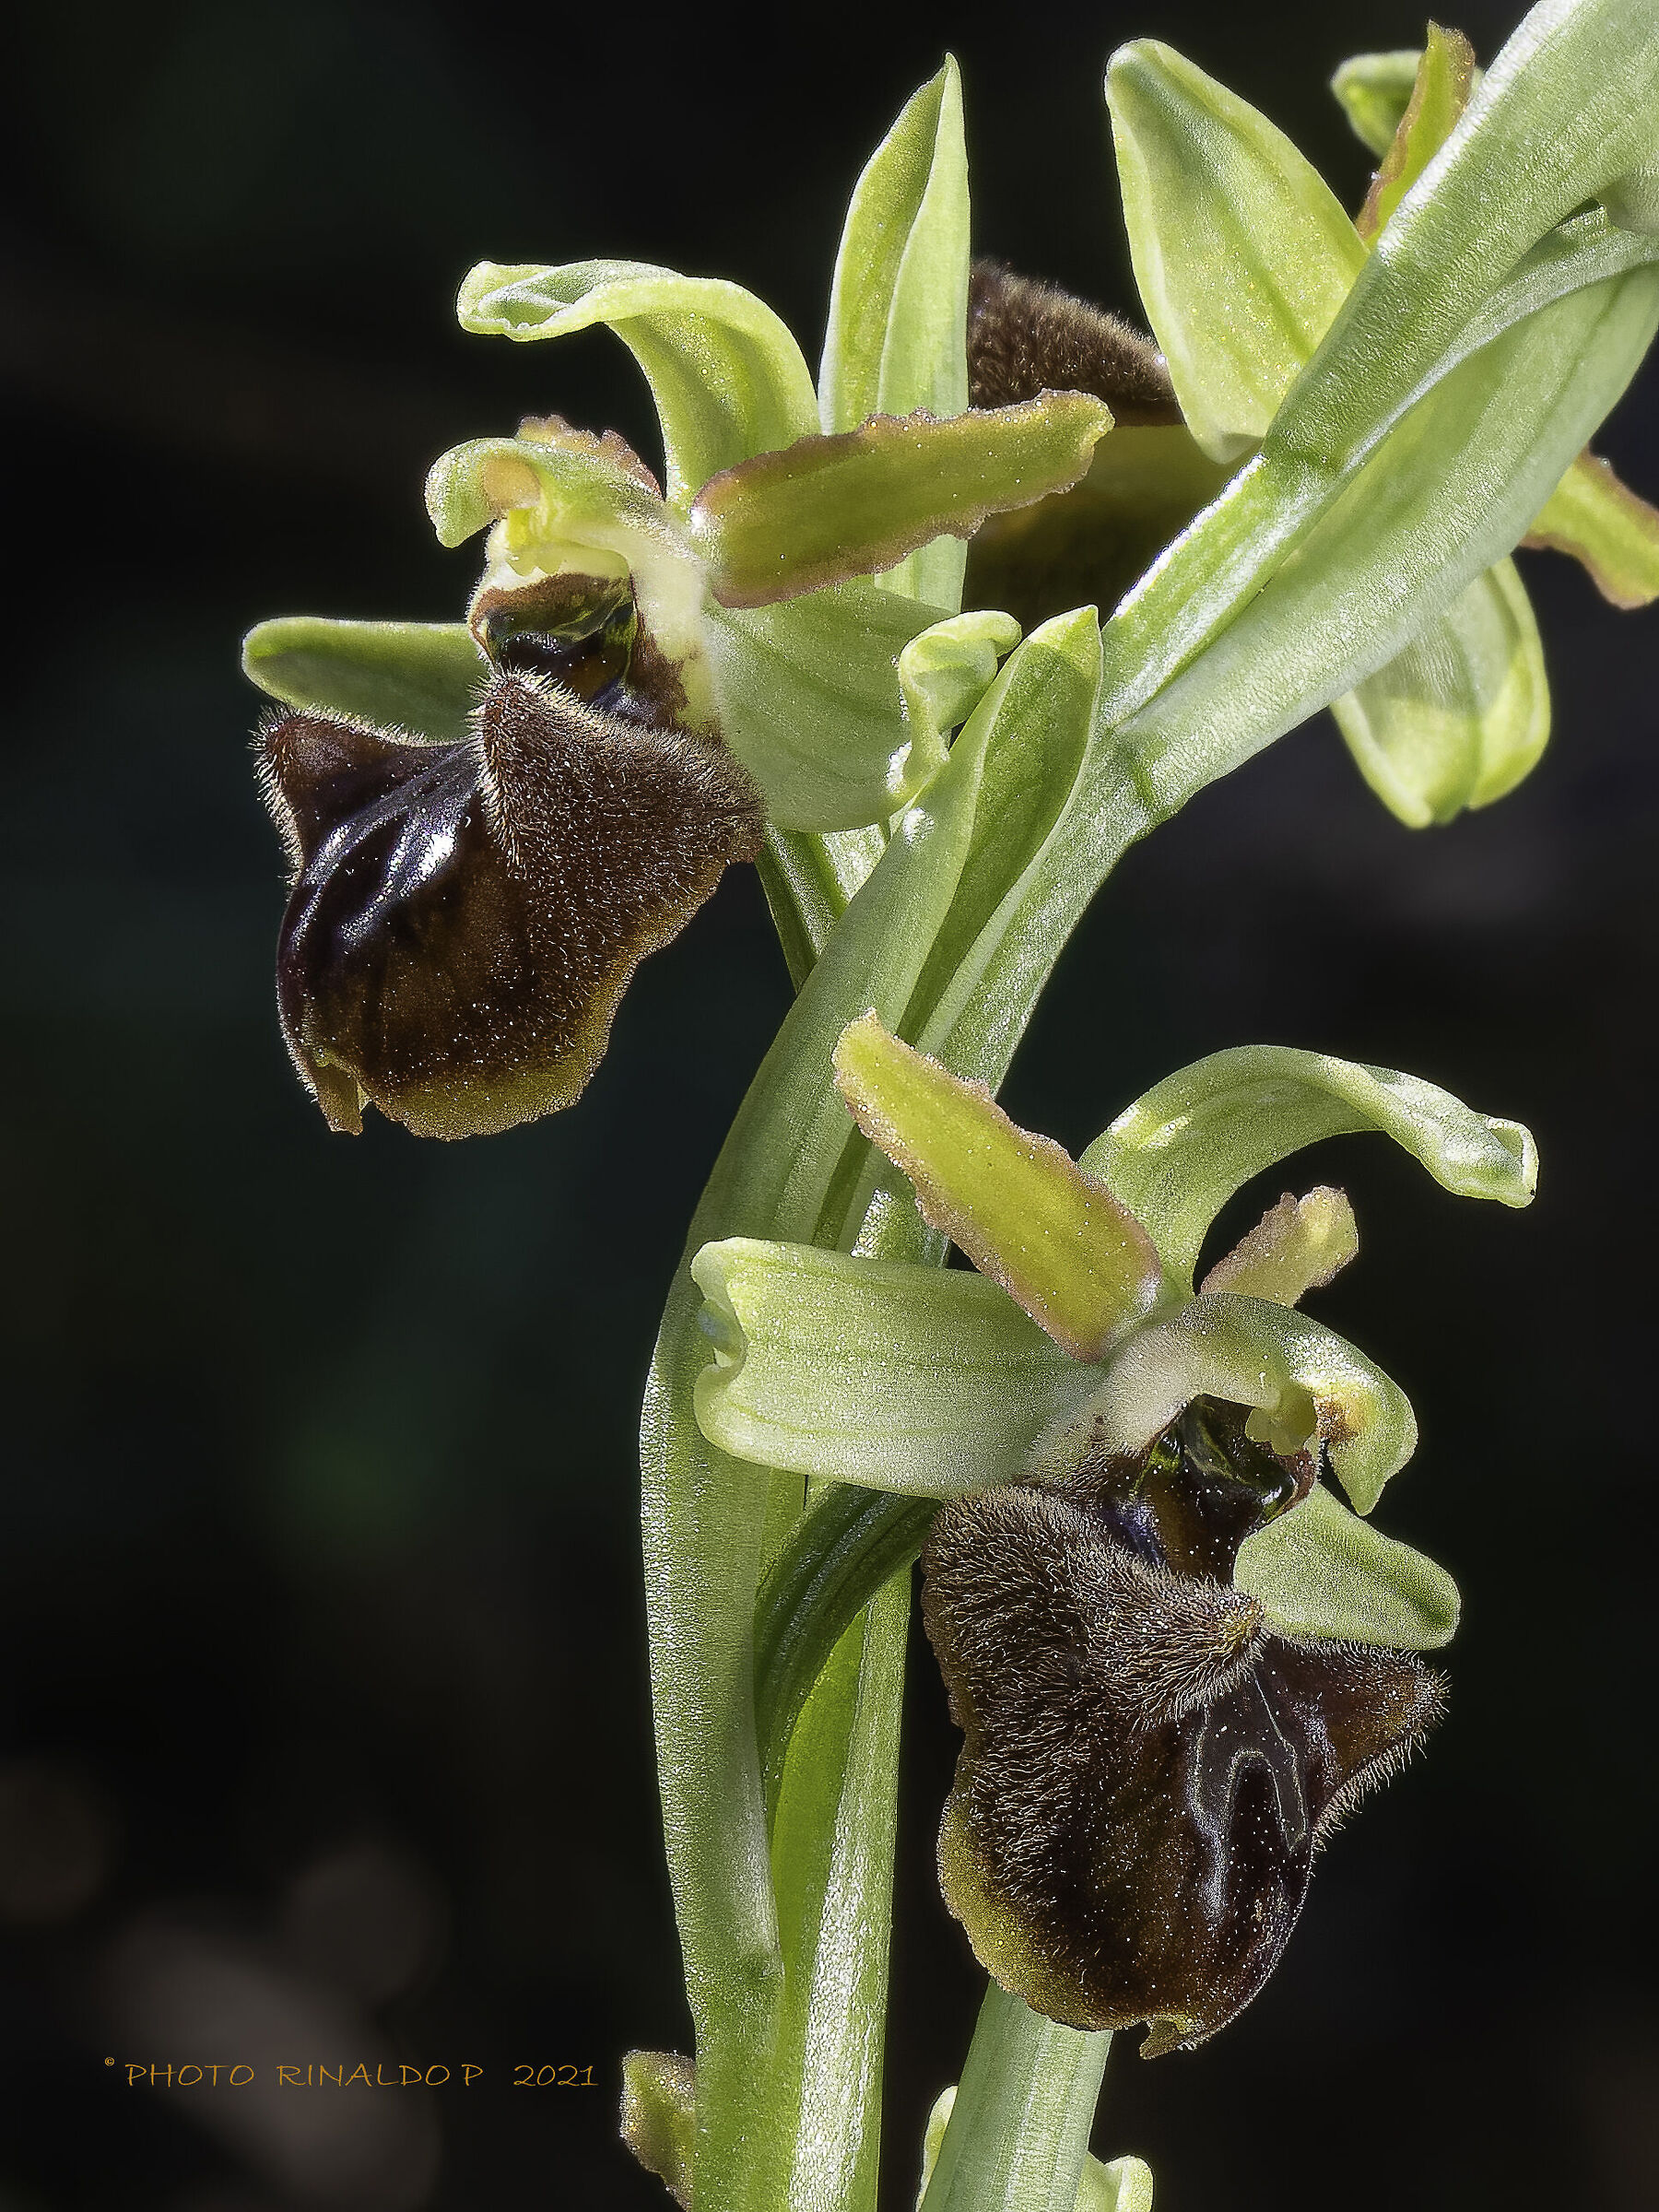 Spegodes's ophrys...